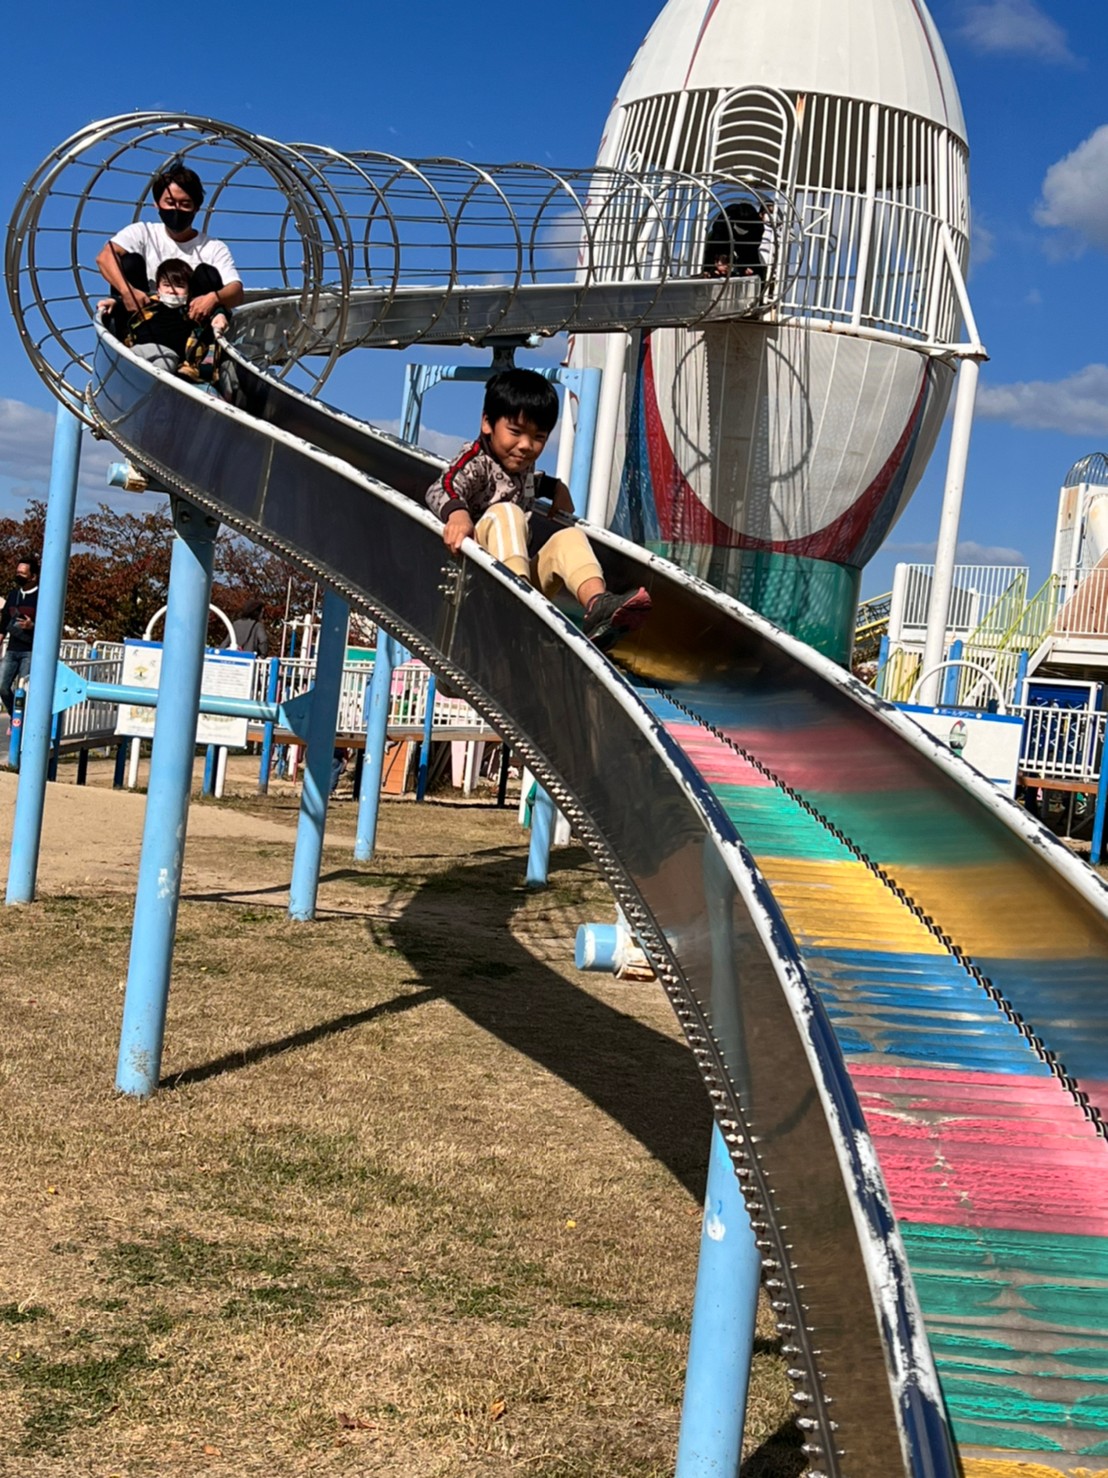 大阪市で外出プログラムが評判の児童福祉施設、放課後等デイサービス事業所 花園中央公園での子供の様子